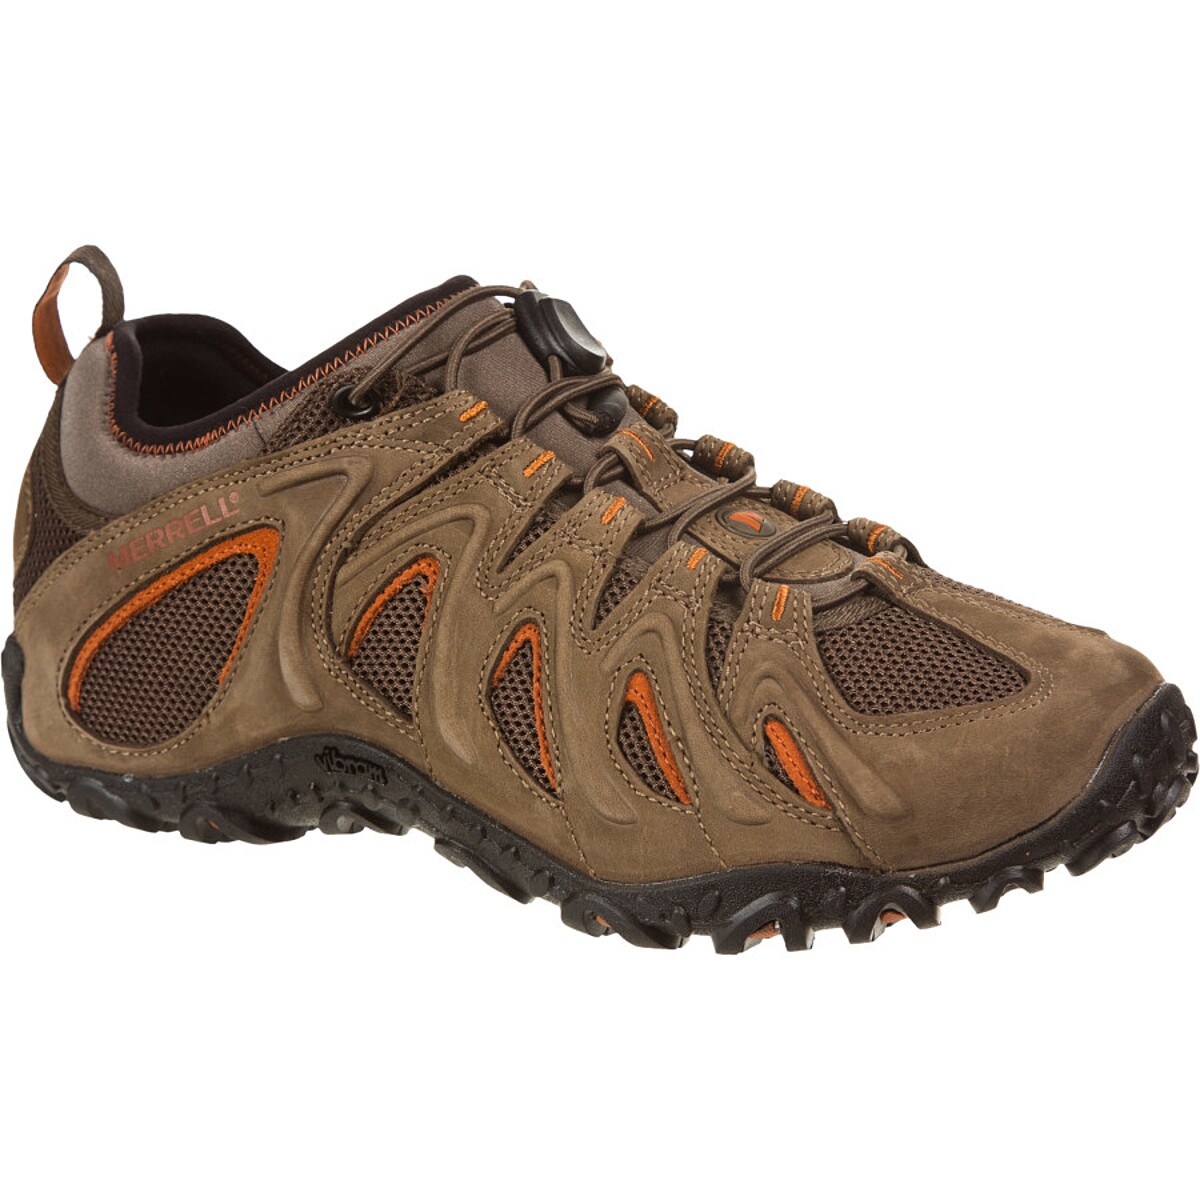 Merrell Chameleon 4 Stretch Hiking Shoe - Men's | eBay